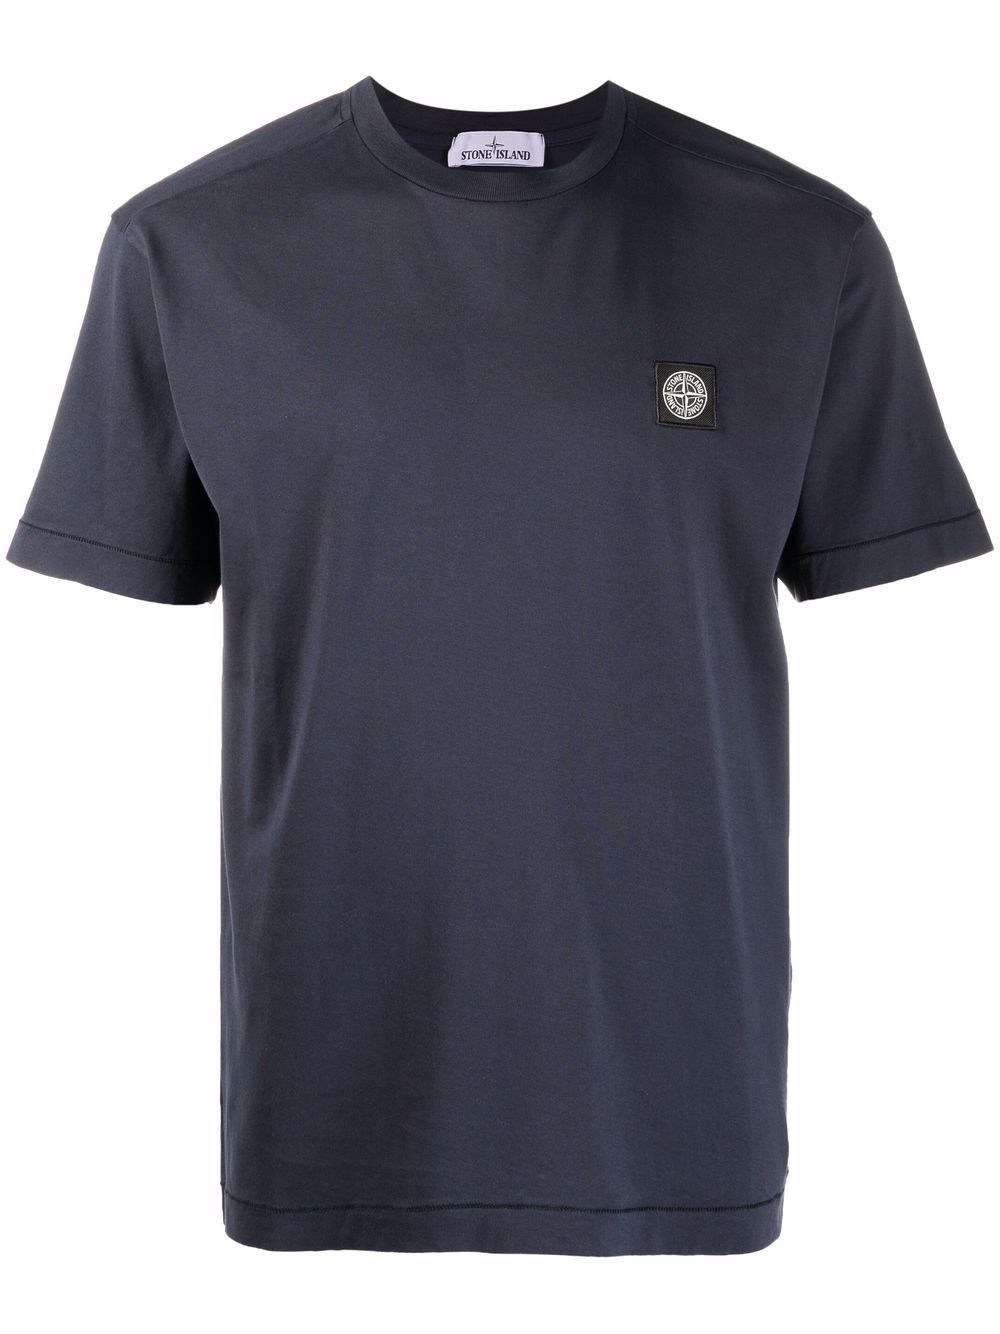 Stone Island t-shirt 23742 Cotton Jersey 20/1 'Fissato' effect - Lothaire boutiques (6934673064101)